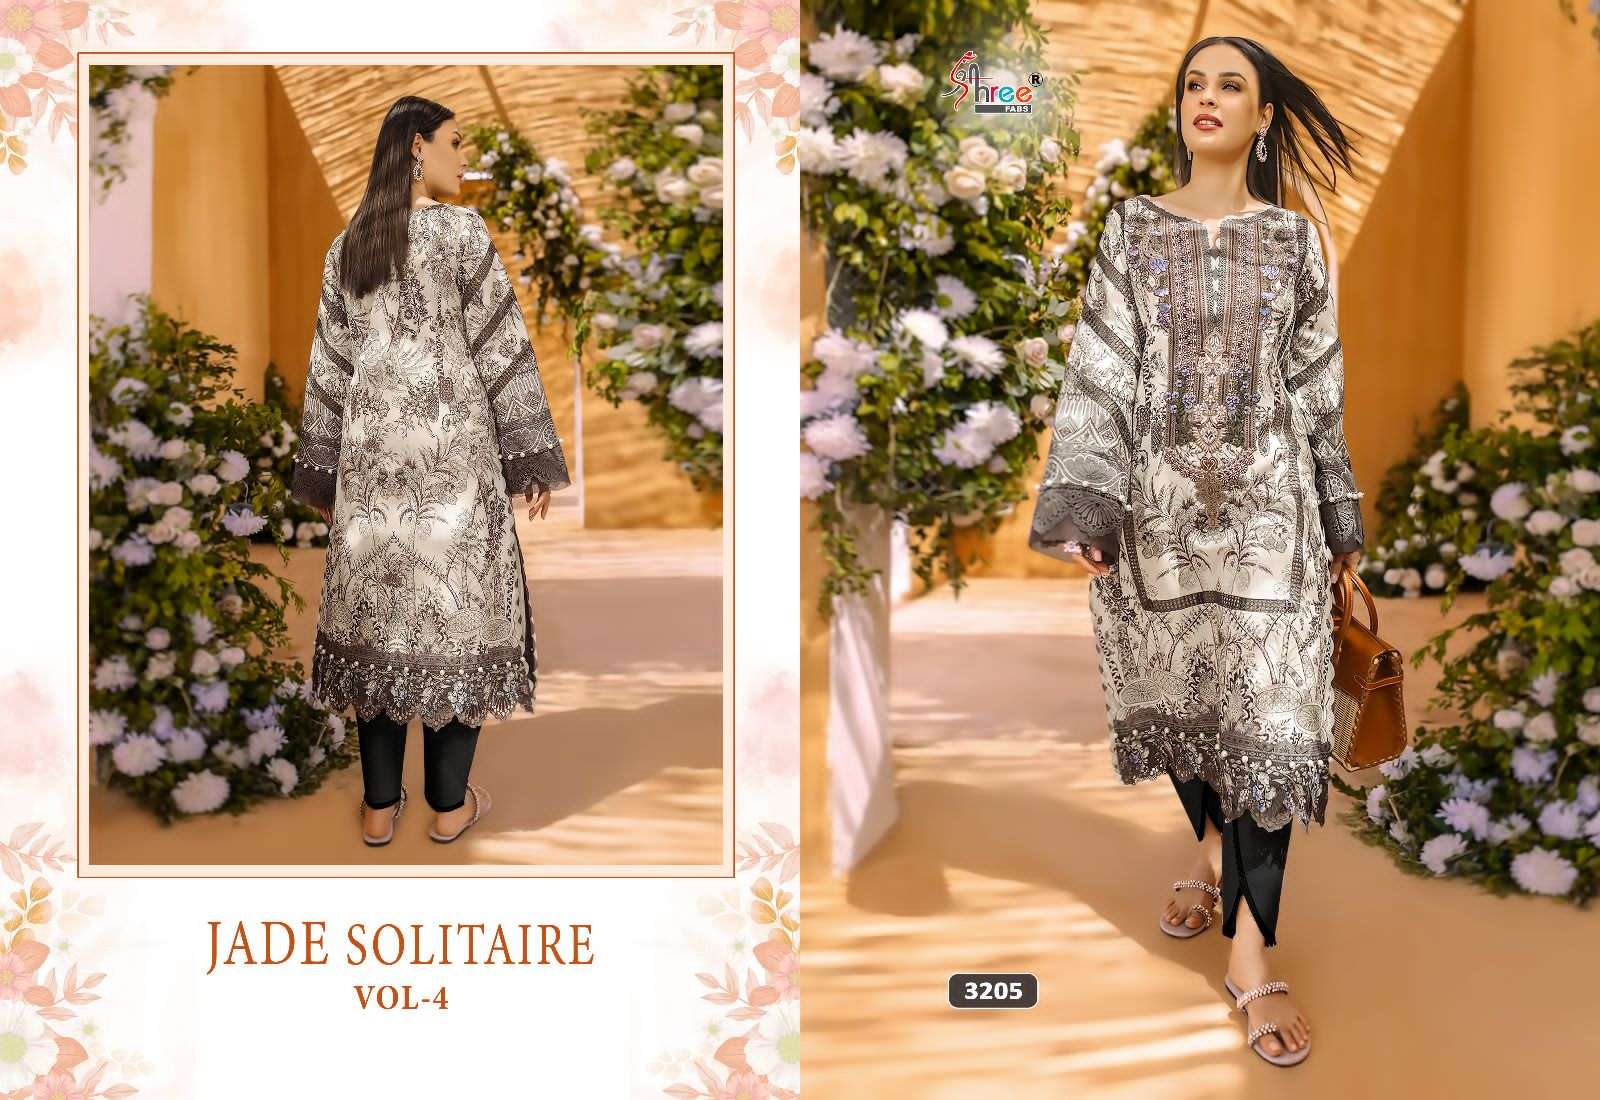 jade solitaire vol-4 3201-3207 series by shree fabs printed pakistani salwar kameez wholesale price 